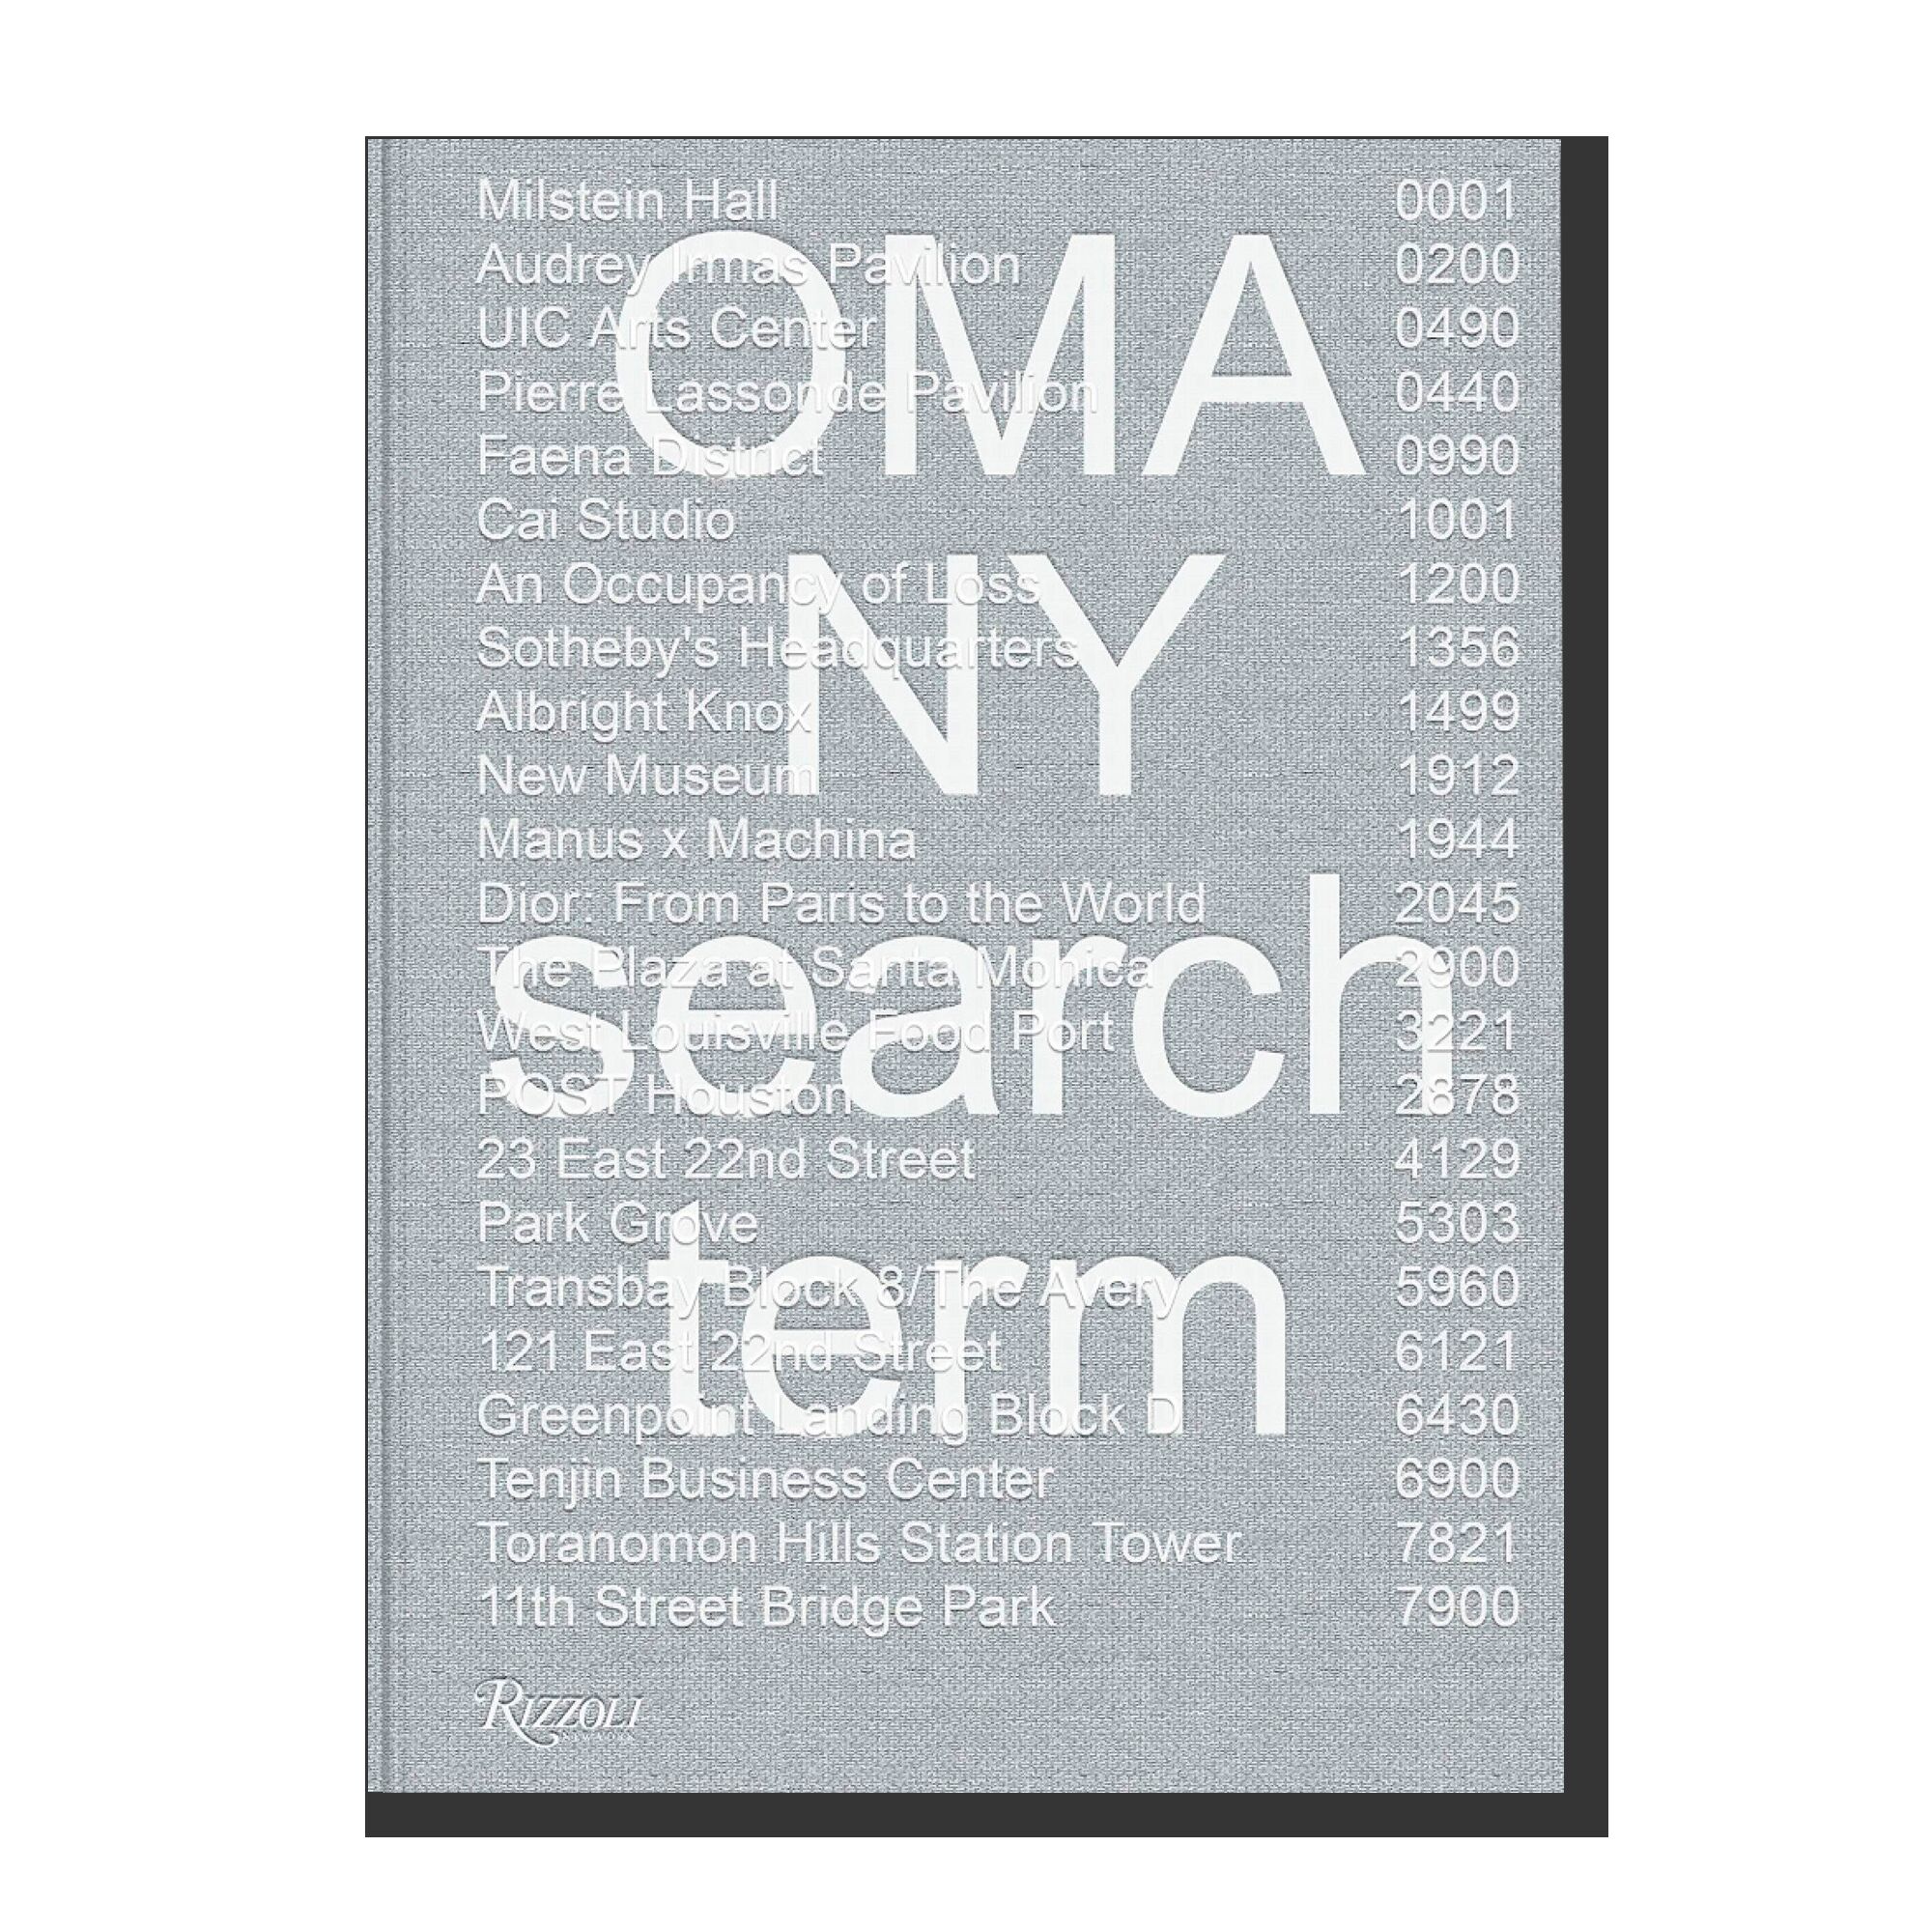 OMA NY: Search Term